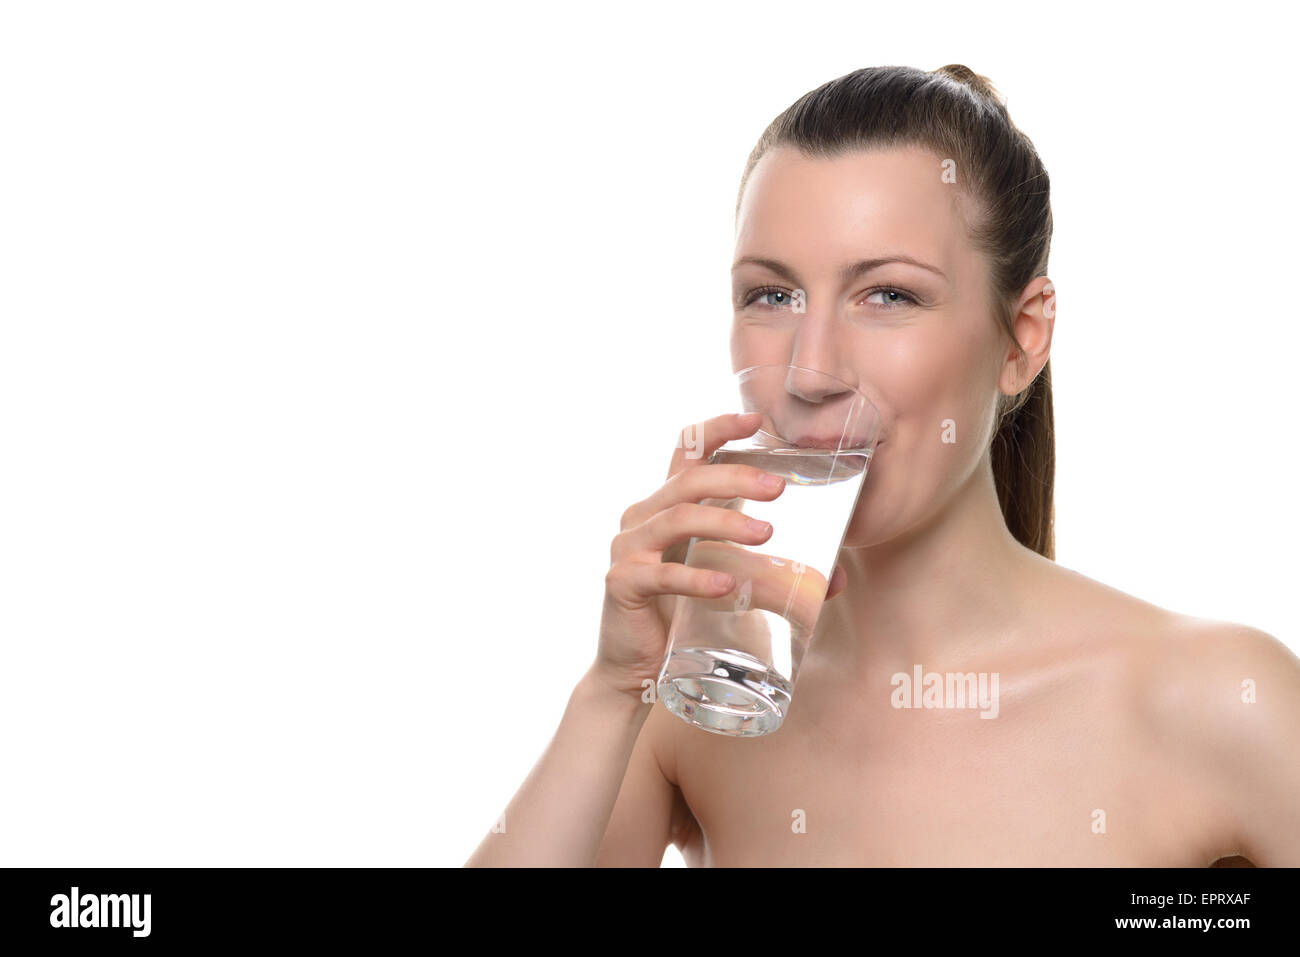 Joli sourire Femme en bonne santé de boire un verre d'eau tout en regardant la caméra, isolated on white Banque D'Images